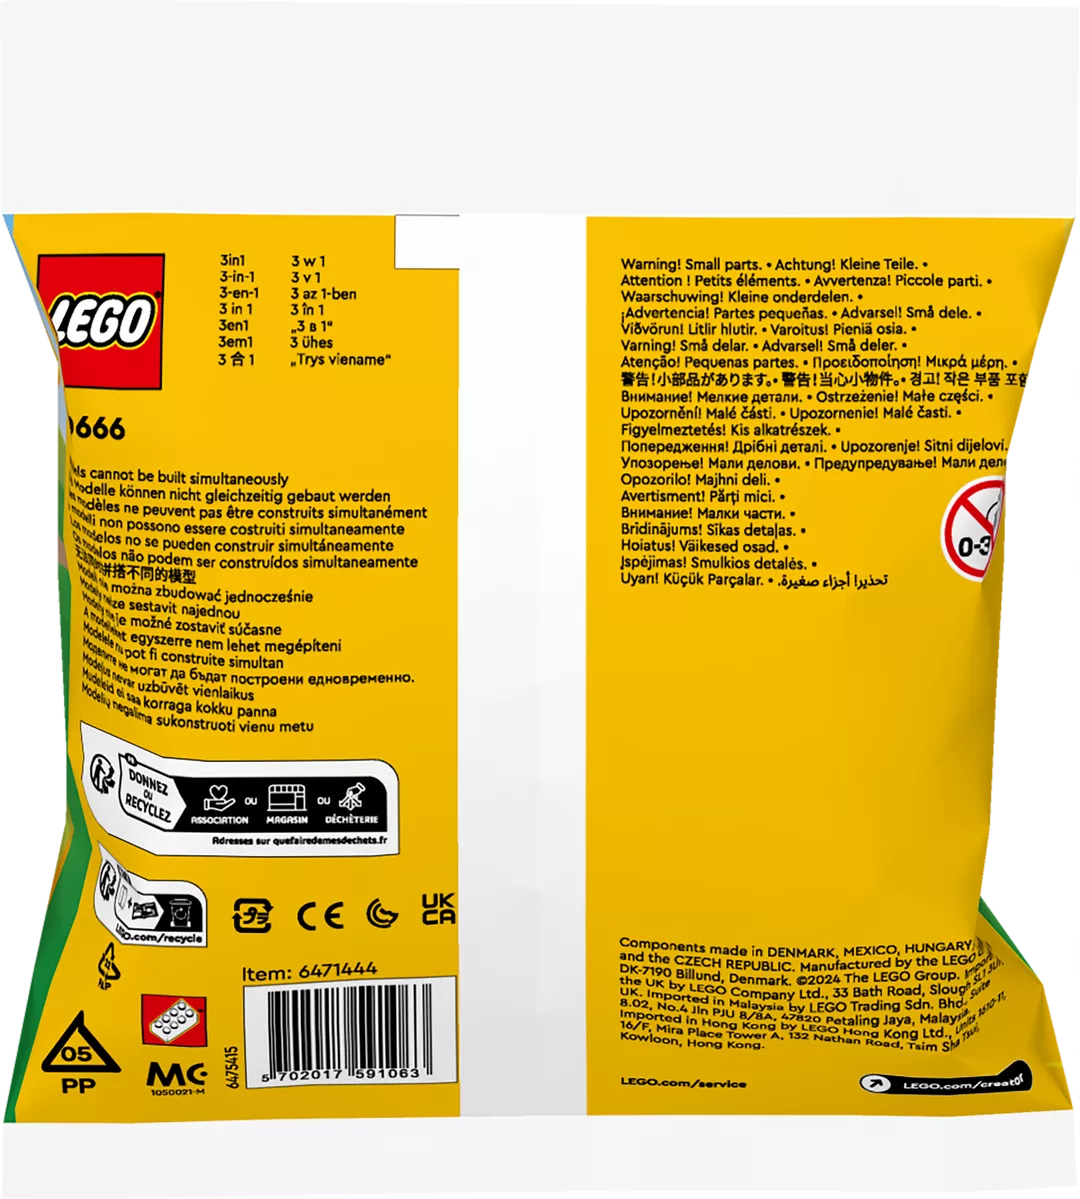 LEGO 30666 Geschenkset mit Tieren